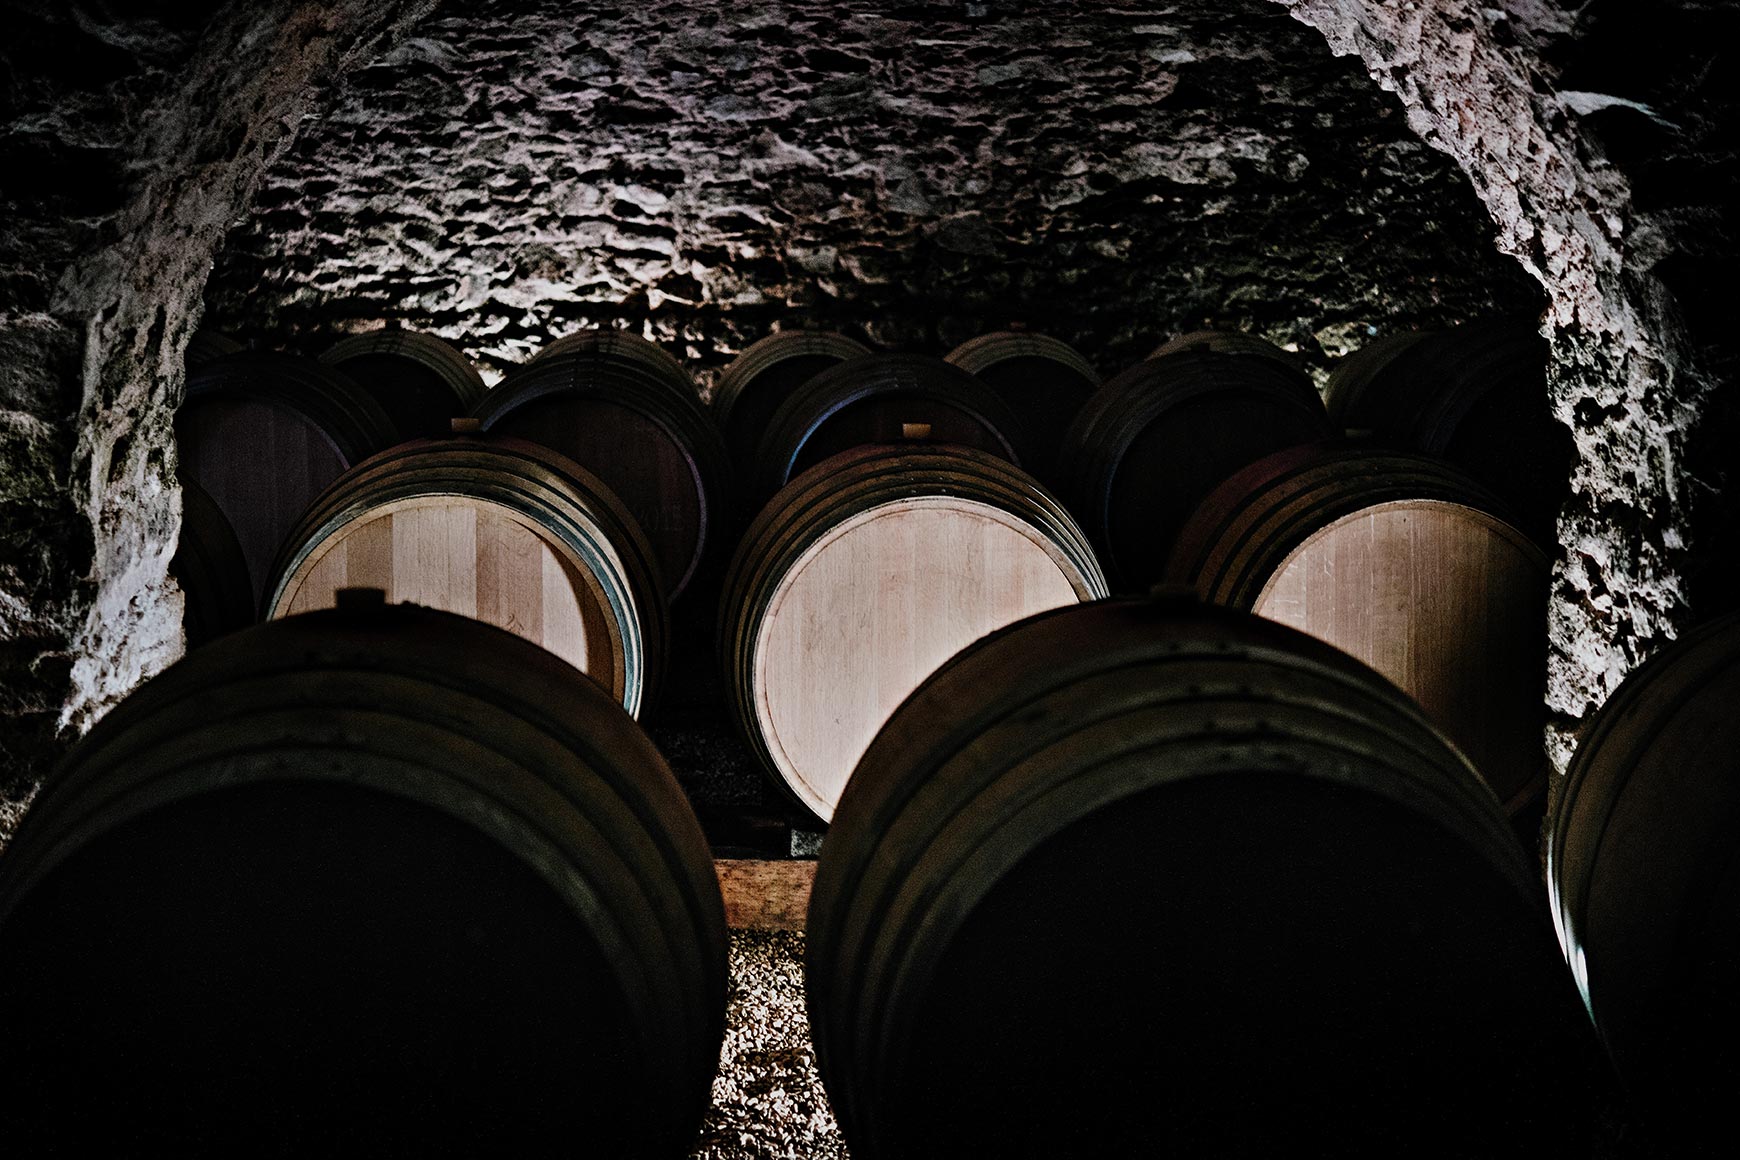 Tonneaux de vins en cave